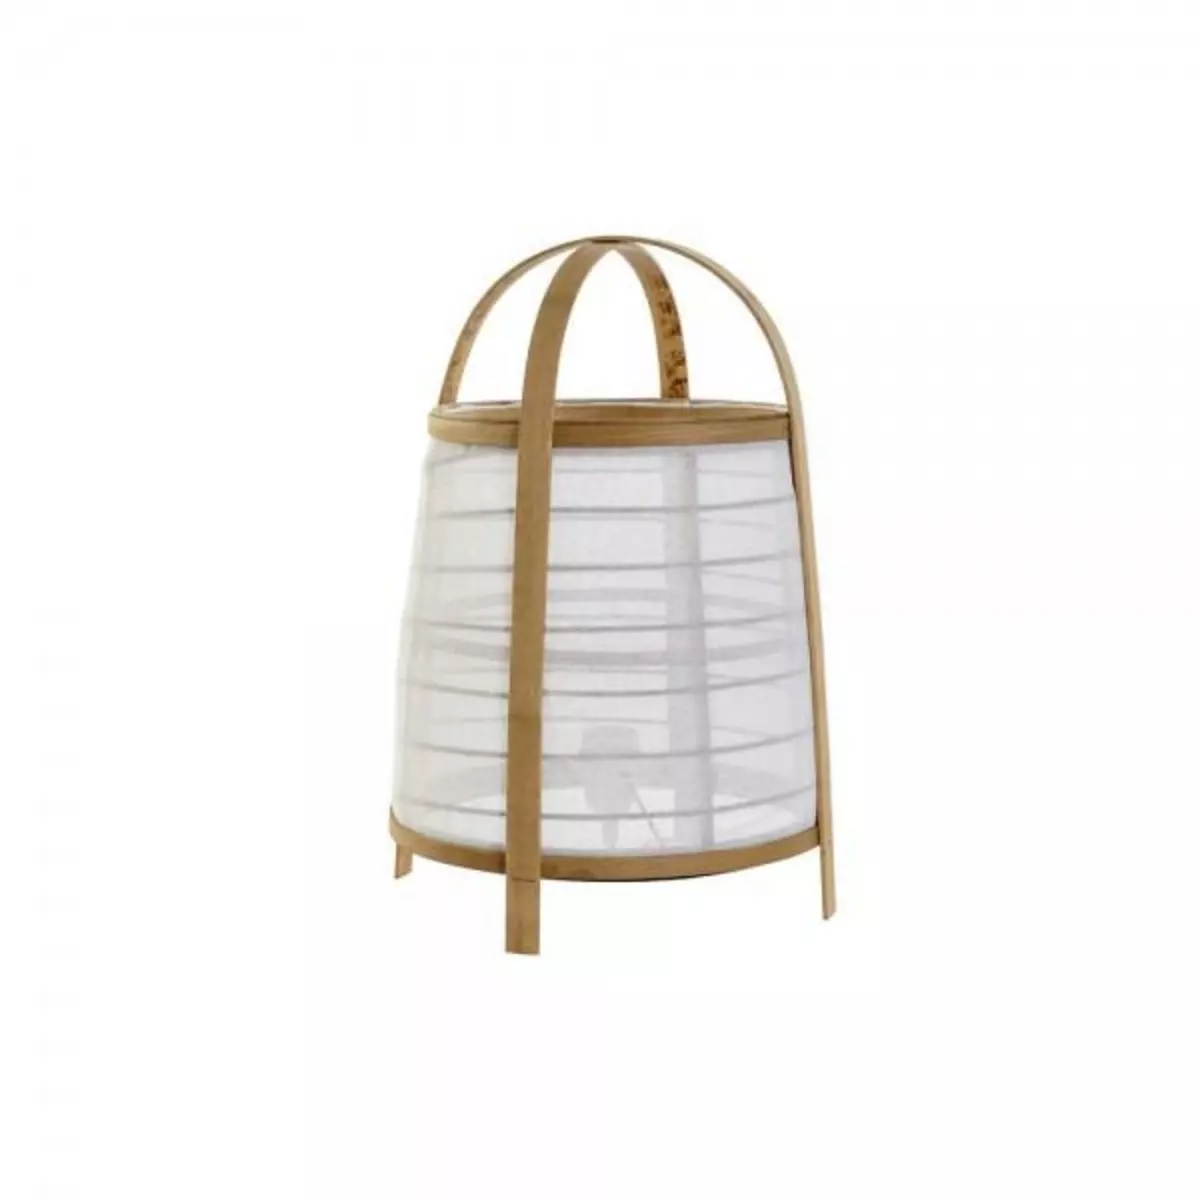 MARKET24 Lampe de bureau DKD Home Decor Lin Blanc Bambou 220 V 40 W (32 x 32 x 45.5 cm)